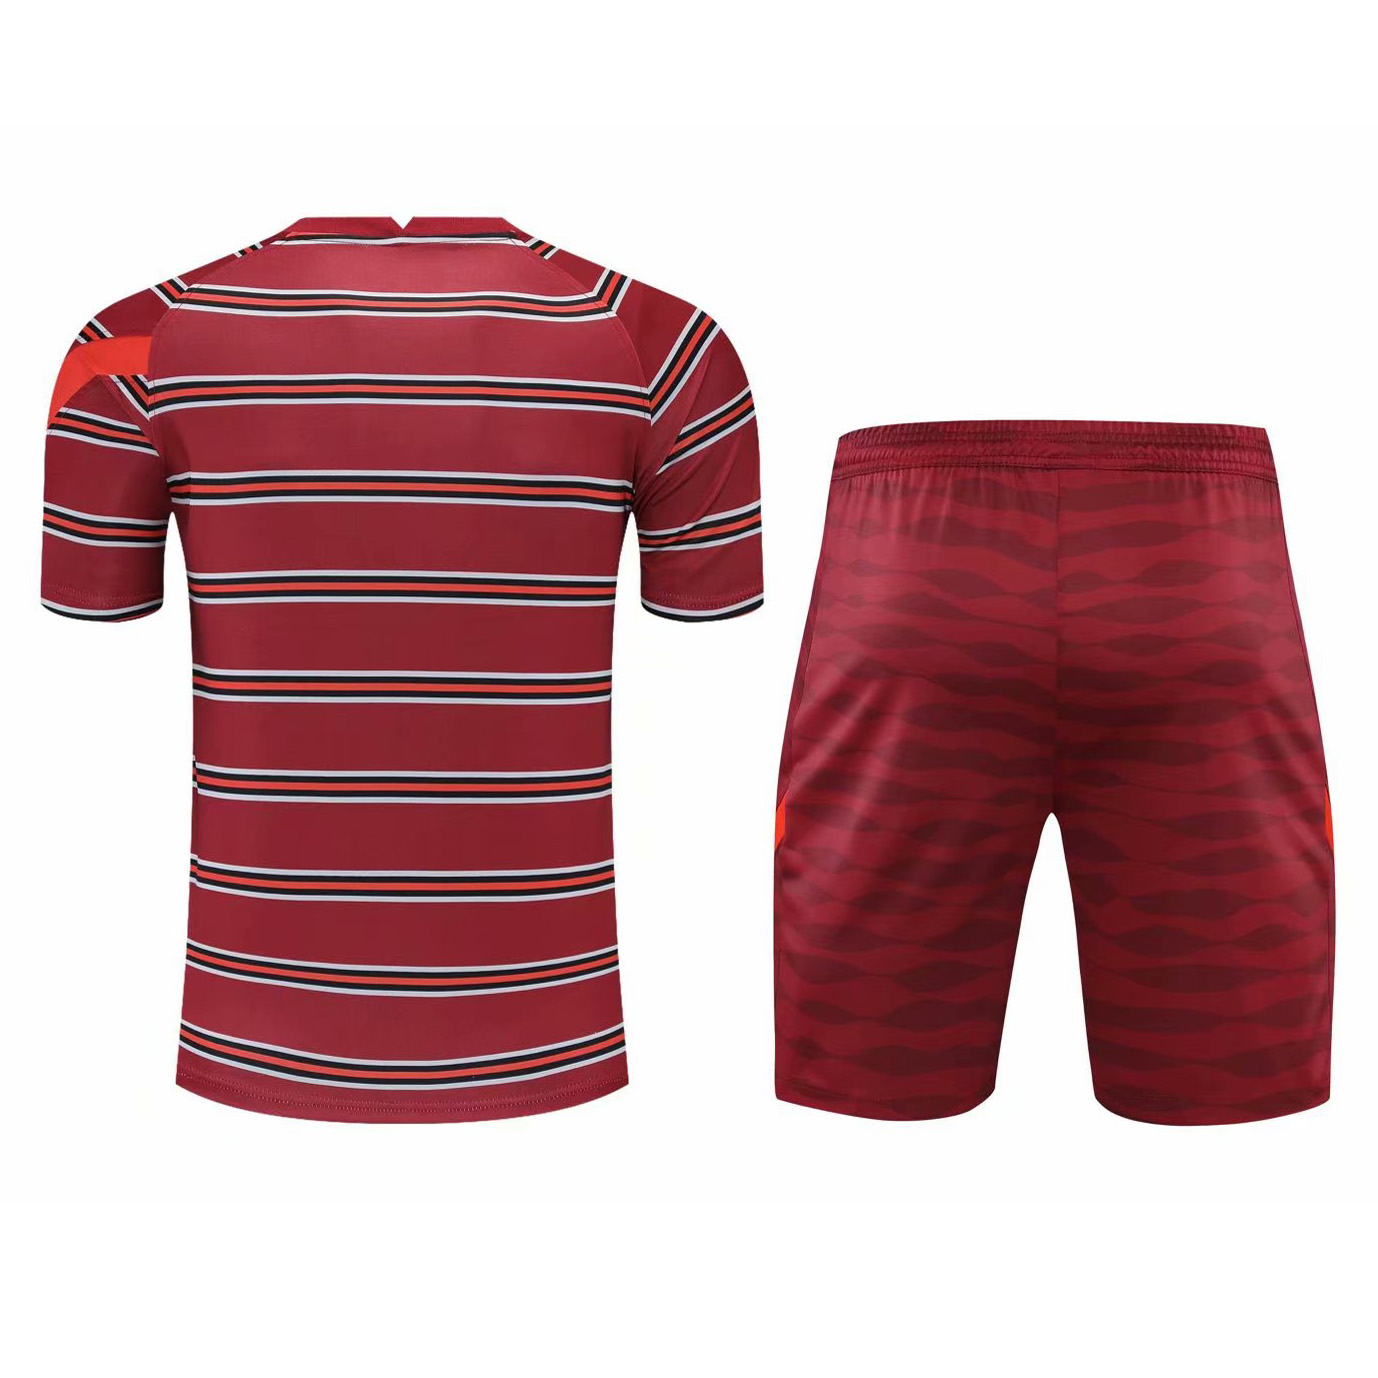 2021/22 Liverpool Burgundy Mens Short Soccer Training Jersey + Short